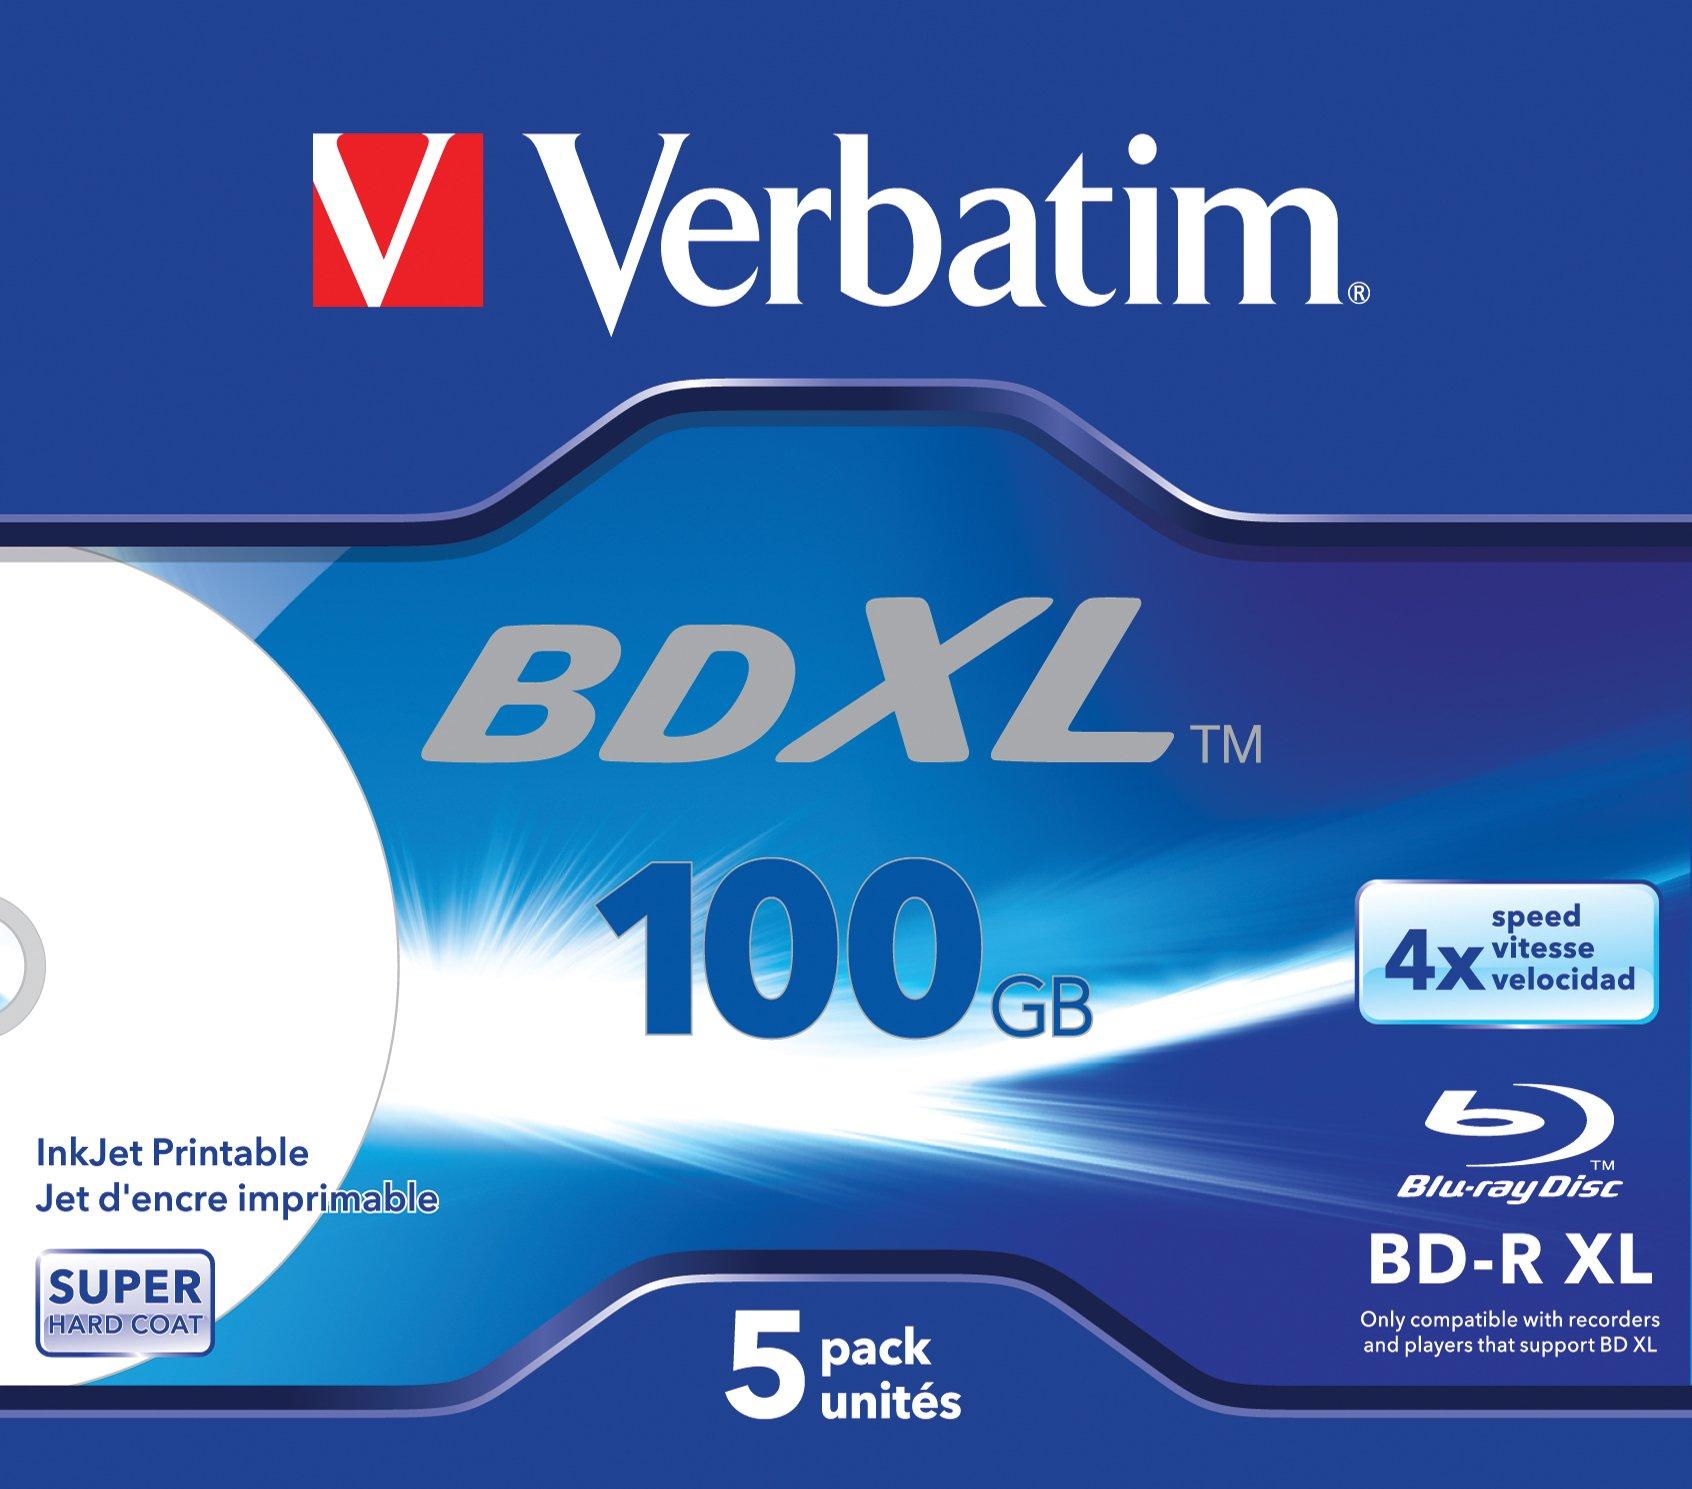 Verbatim  Verbatim BD-R XL 100GB* 4x Ampia area stampabile a getto d'inchiostro, 5 pezzi in Jewel case 